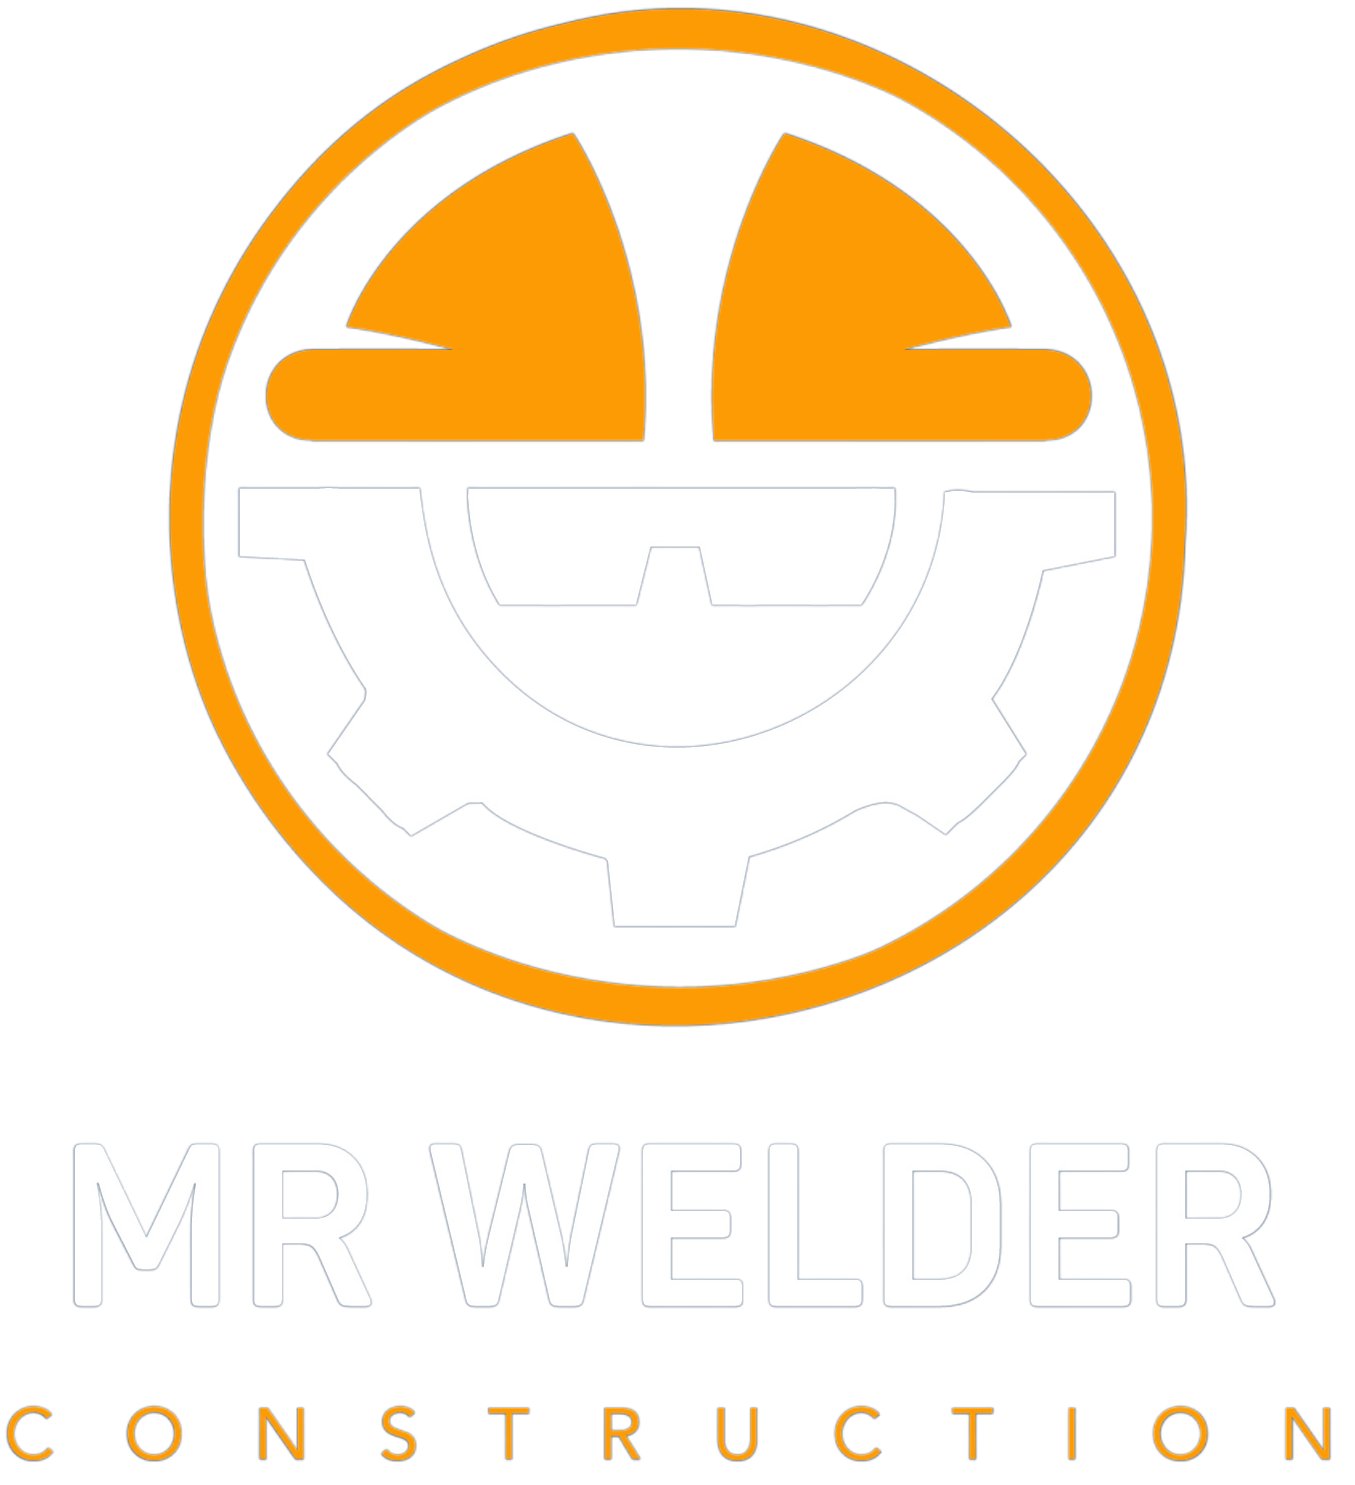 MR WELDER CONSTRUCTION